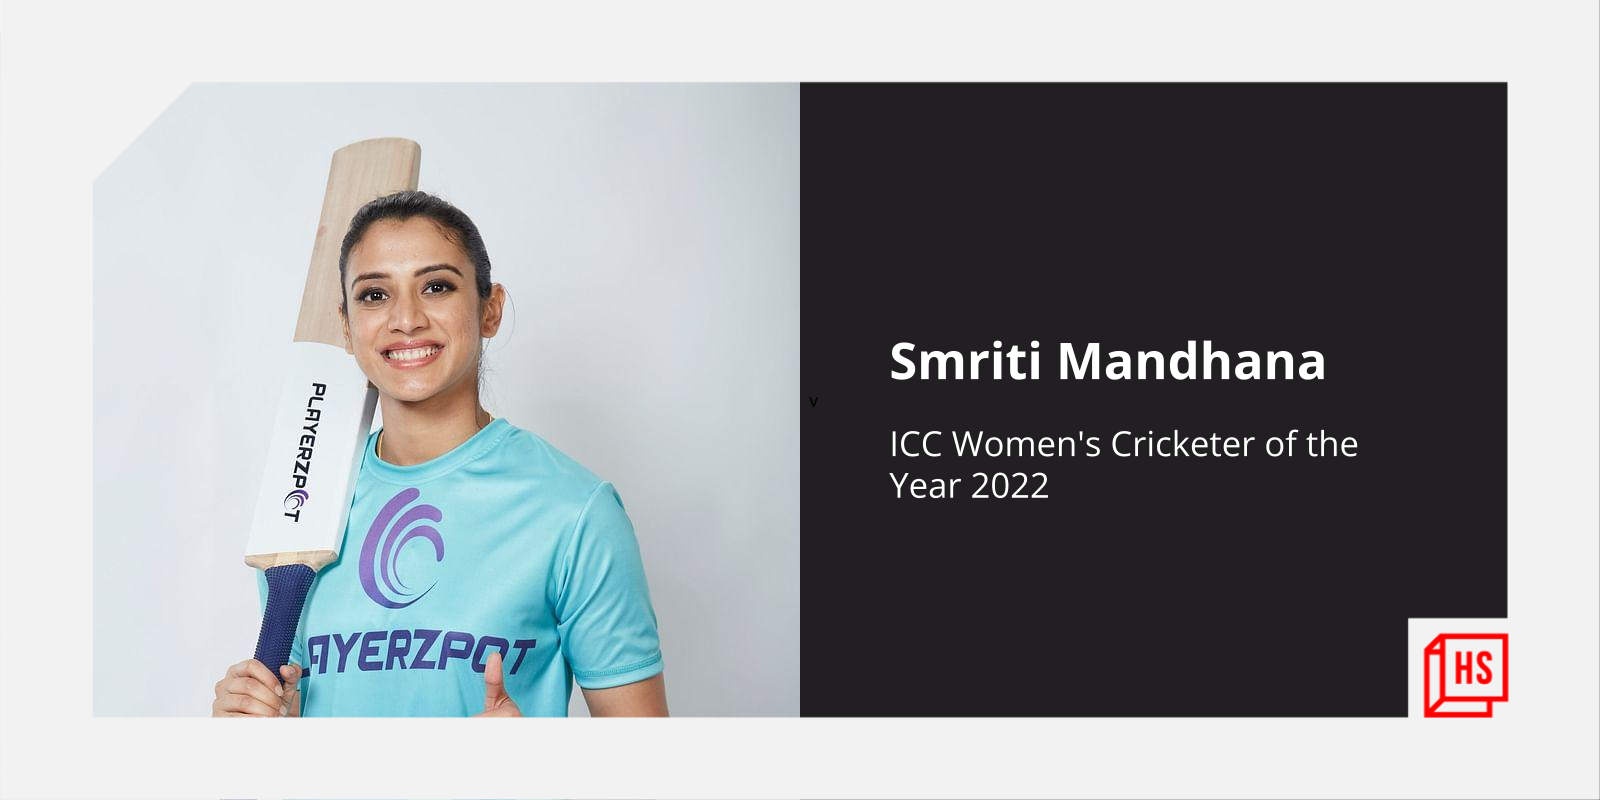 Smriti Mandhana named ICC women's Cricketer of the Year